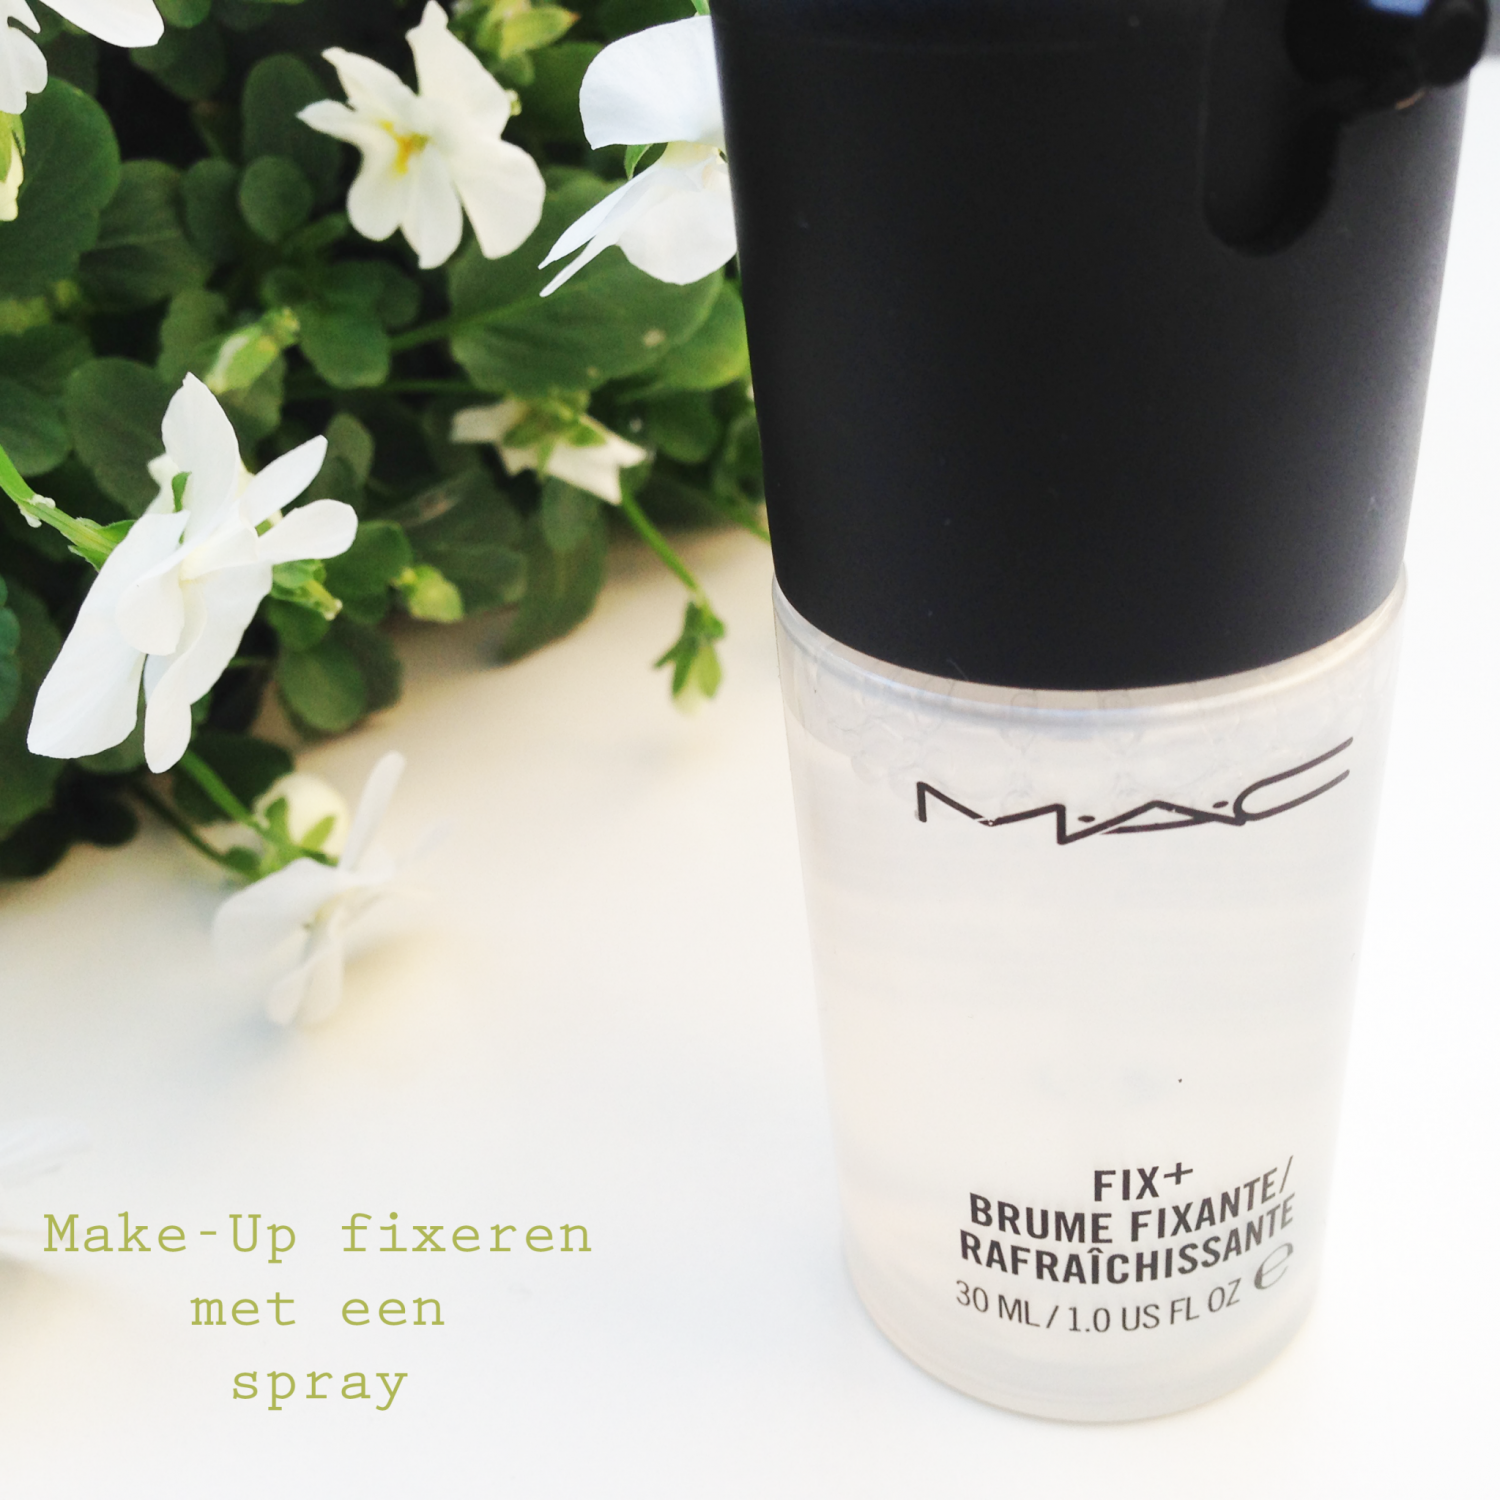 Make-up fixeren met een spray..